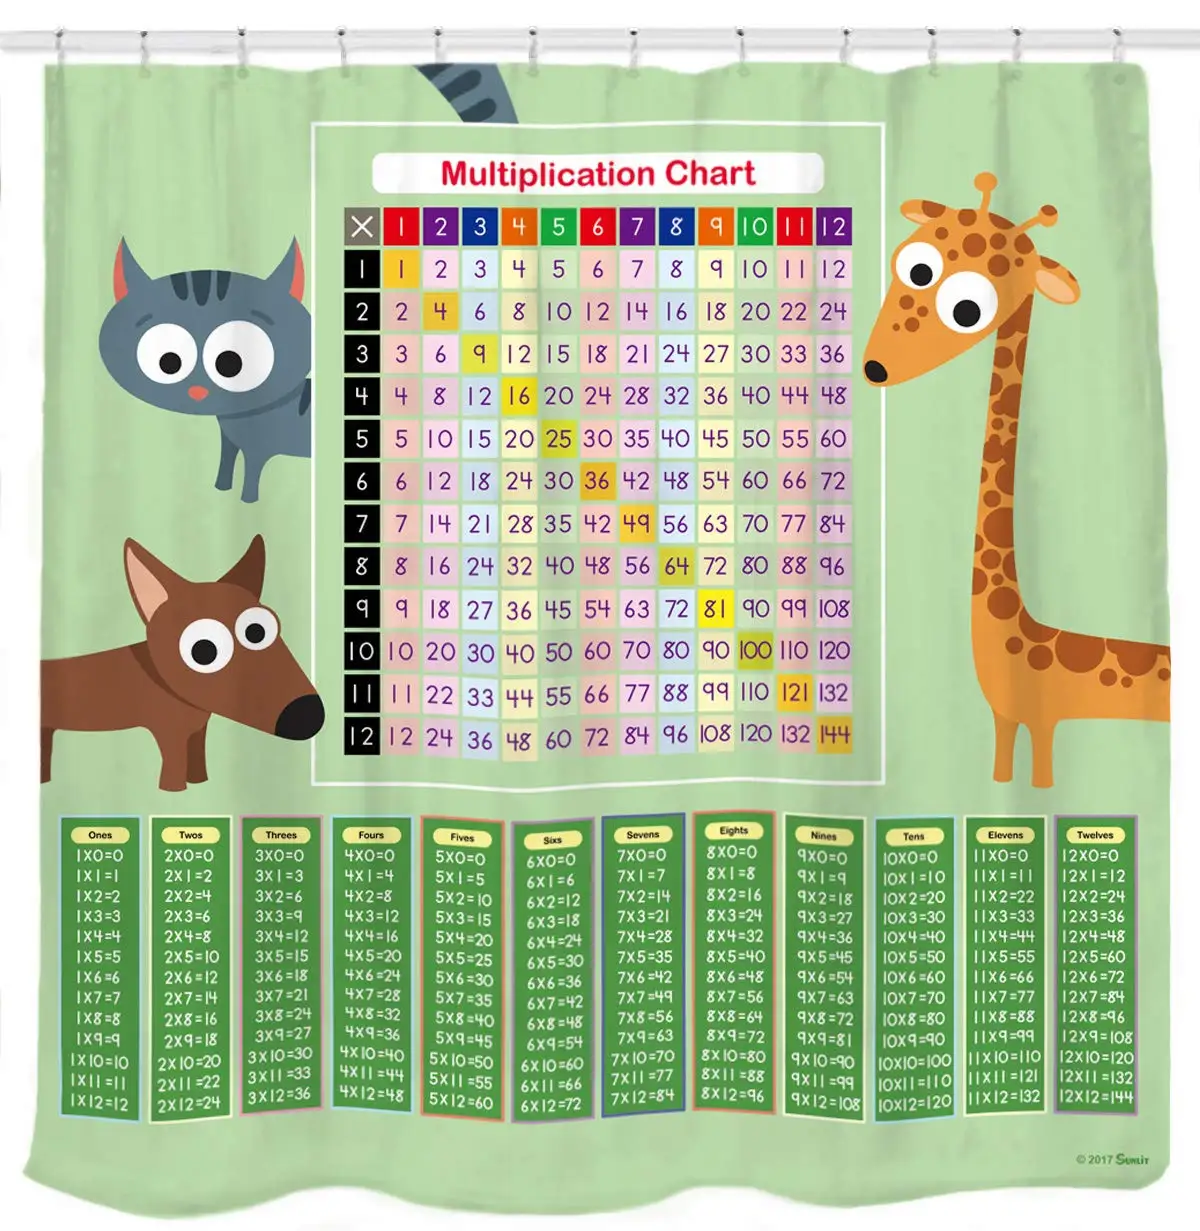 

Multiplication Chart Shower Curtain Set Green Math Tool with Cat Dog Giraffe for Smart Kids